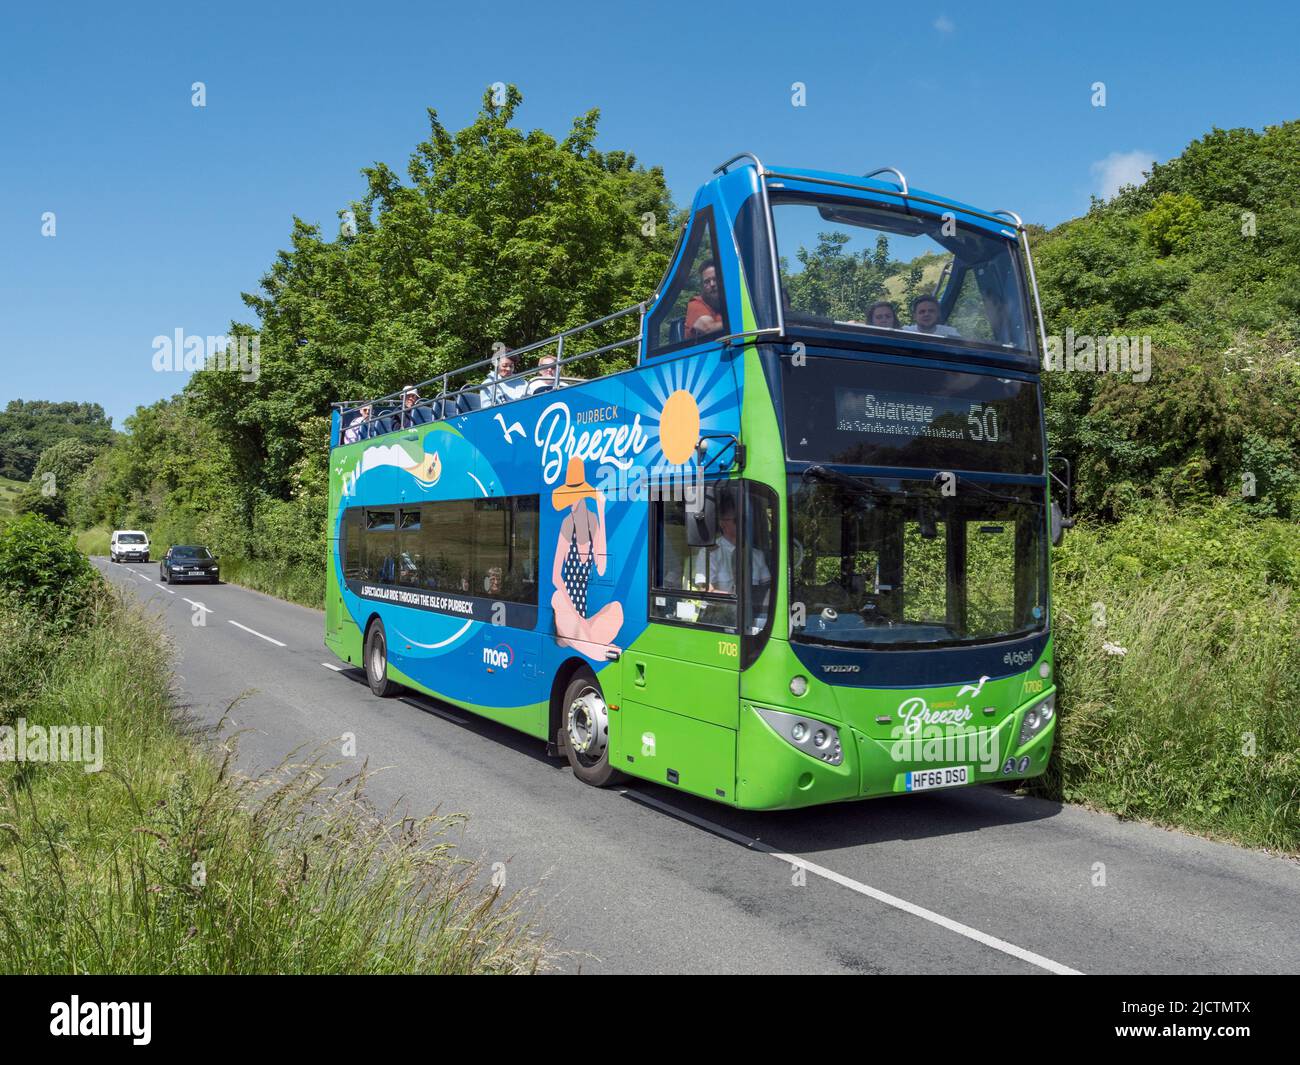 Un bus public local Purbeck Breezer, route 40, en route vers Swanage, Dorset, Royaume-Uni. Banque D'Images